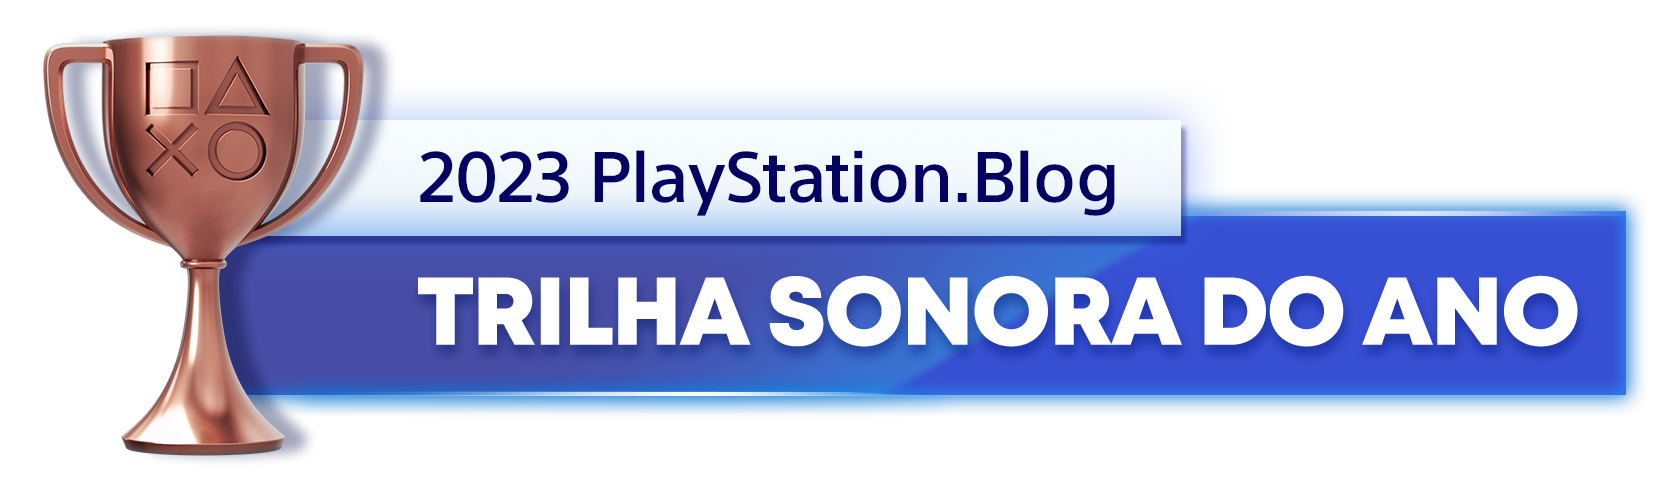  "Troféu de Bronze para o vencedor da categoria Trilha Sonora do Ano de 2023 do PlayStation Blog"